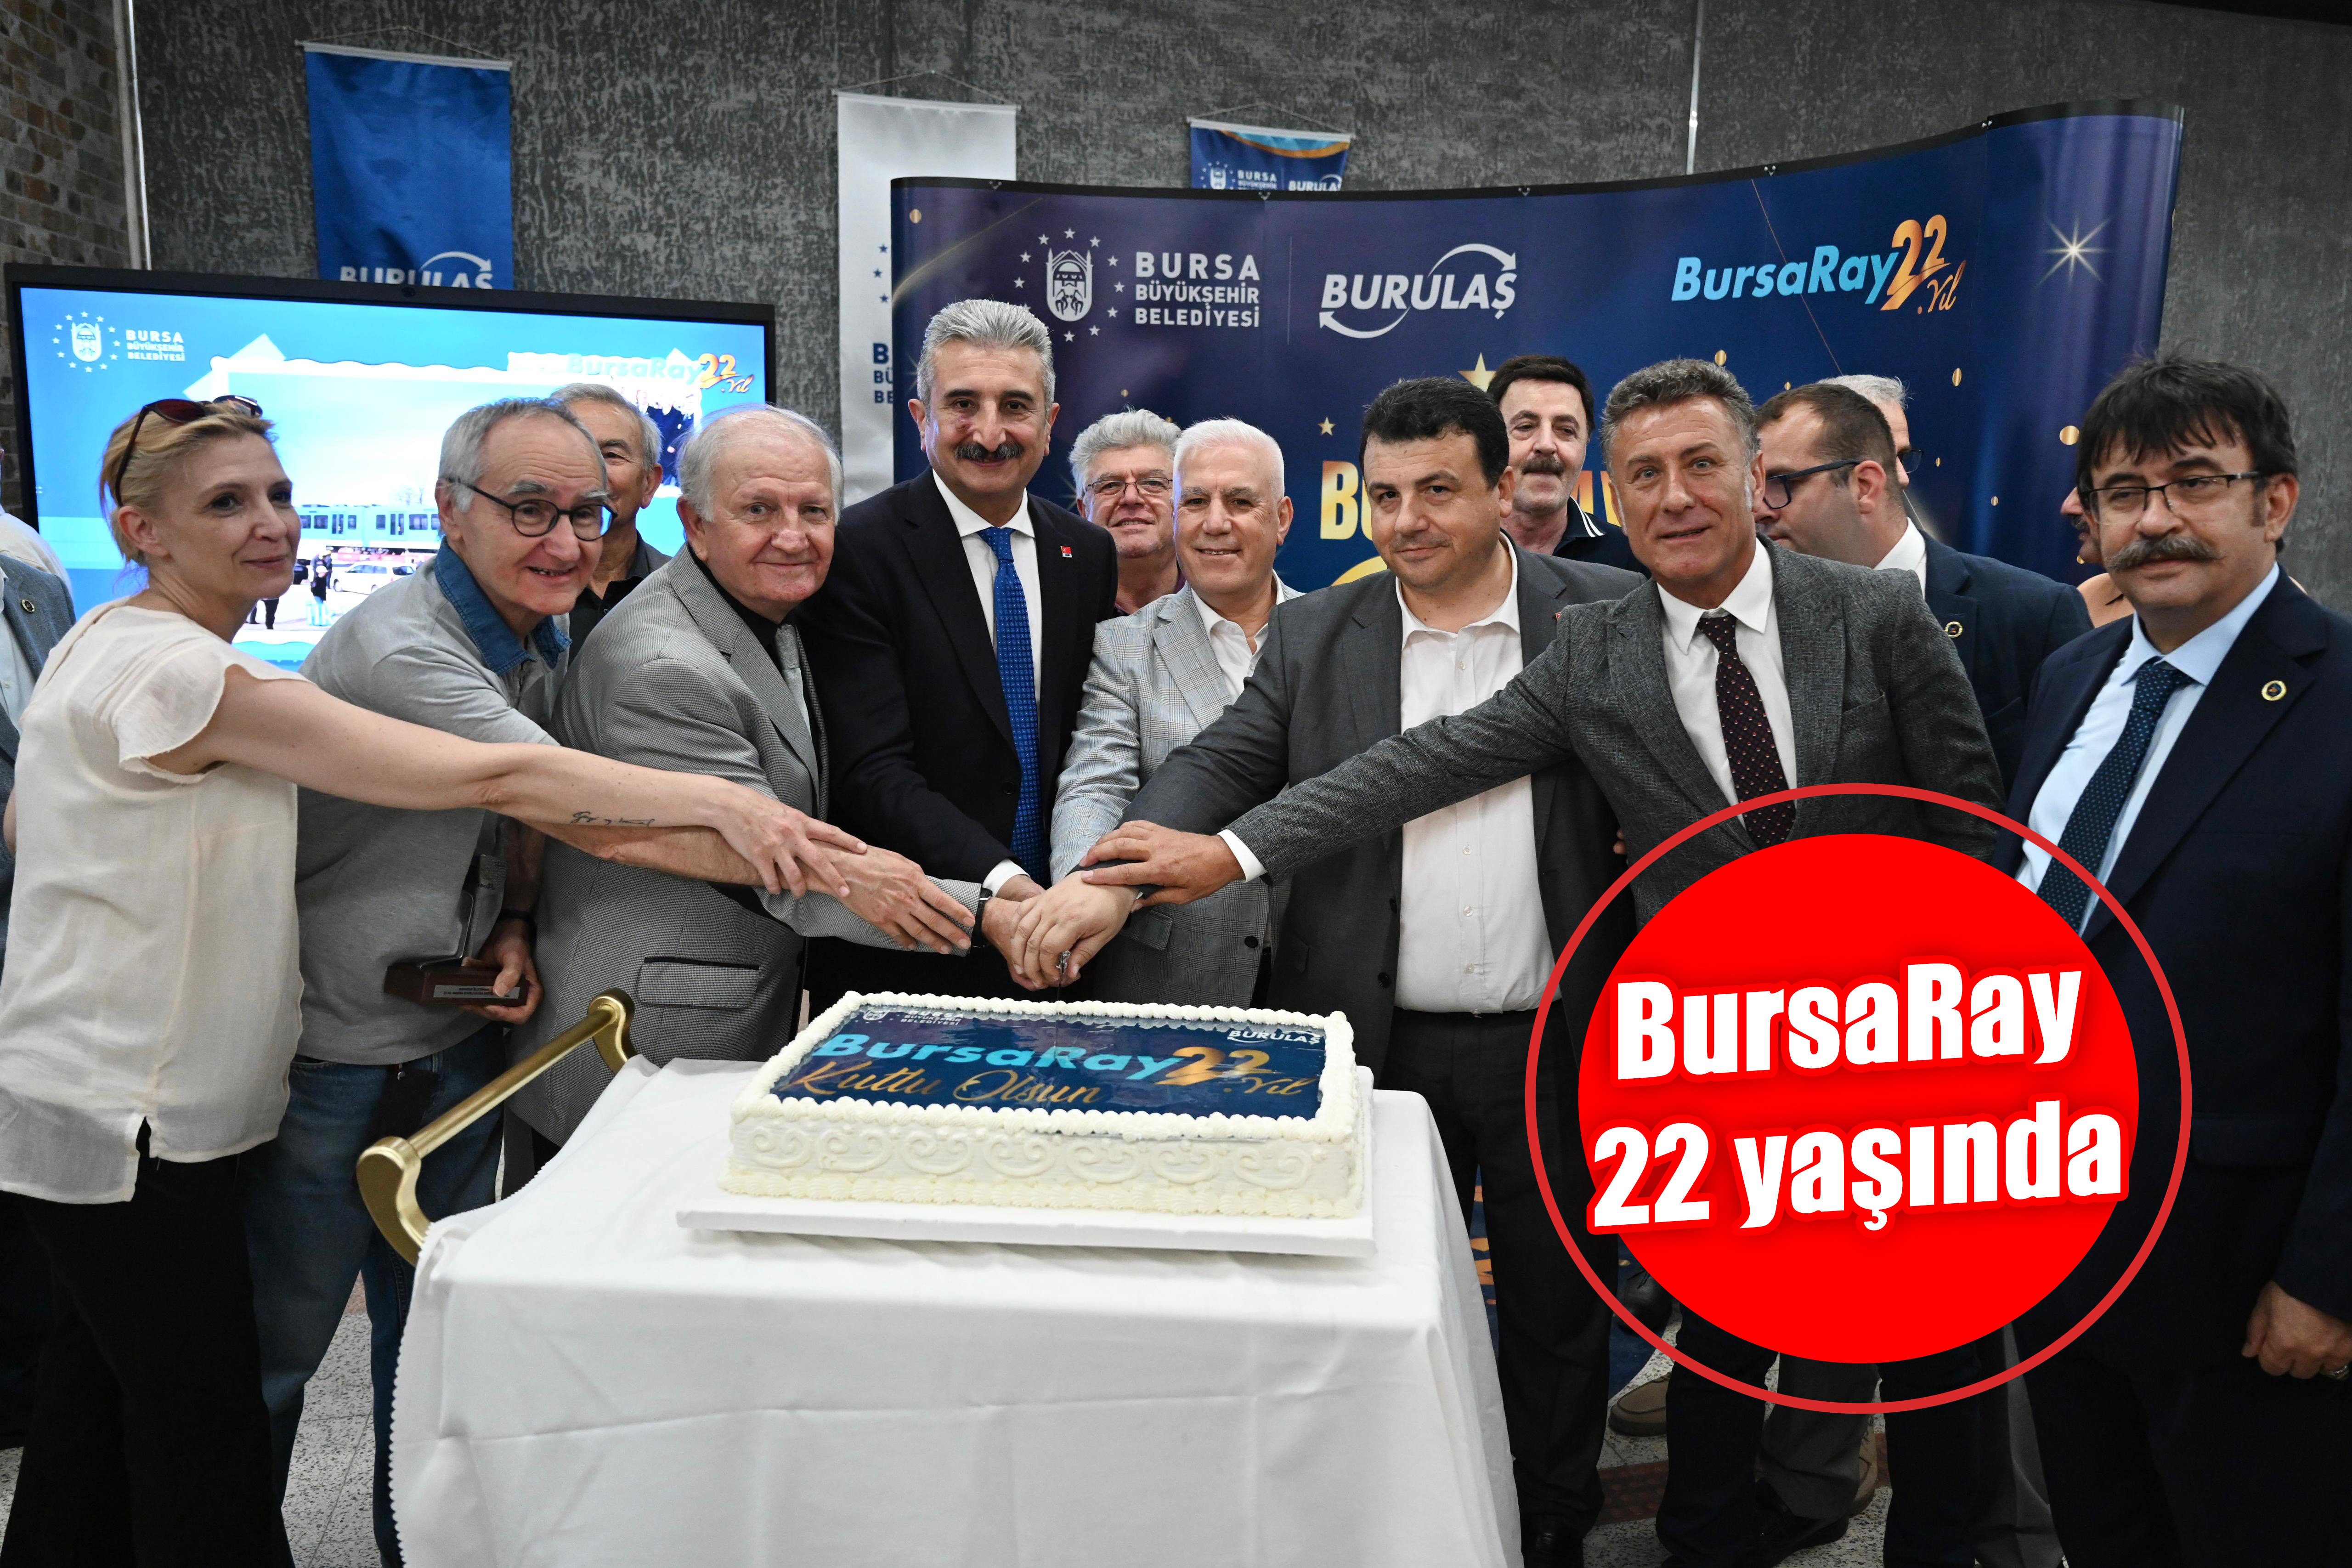 BursaRay 22 yaşında